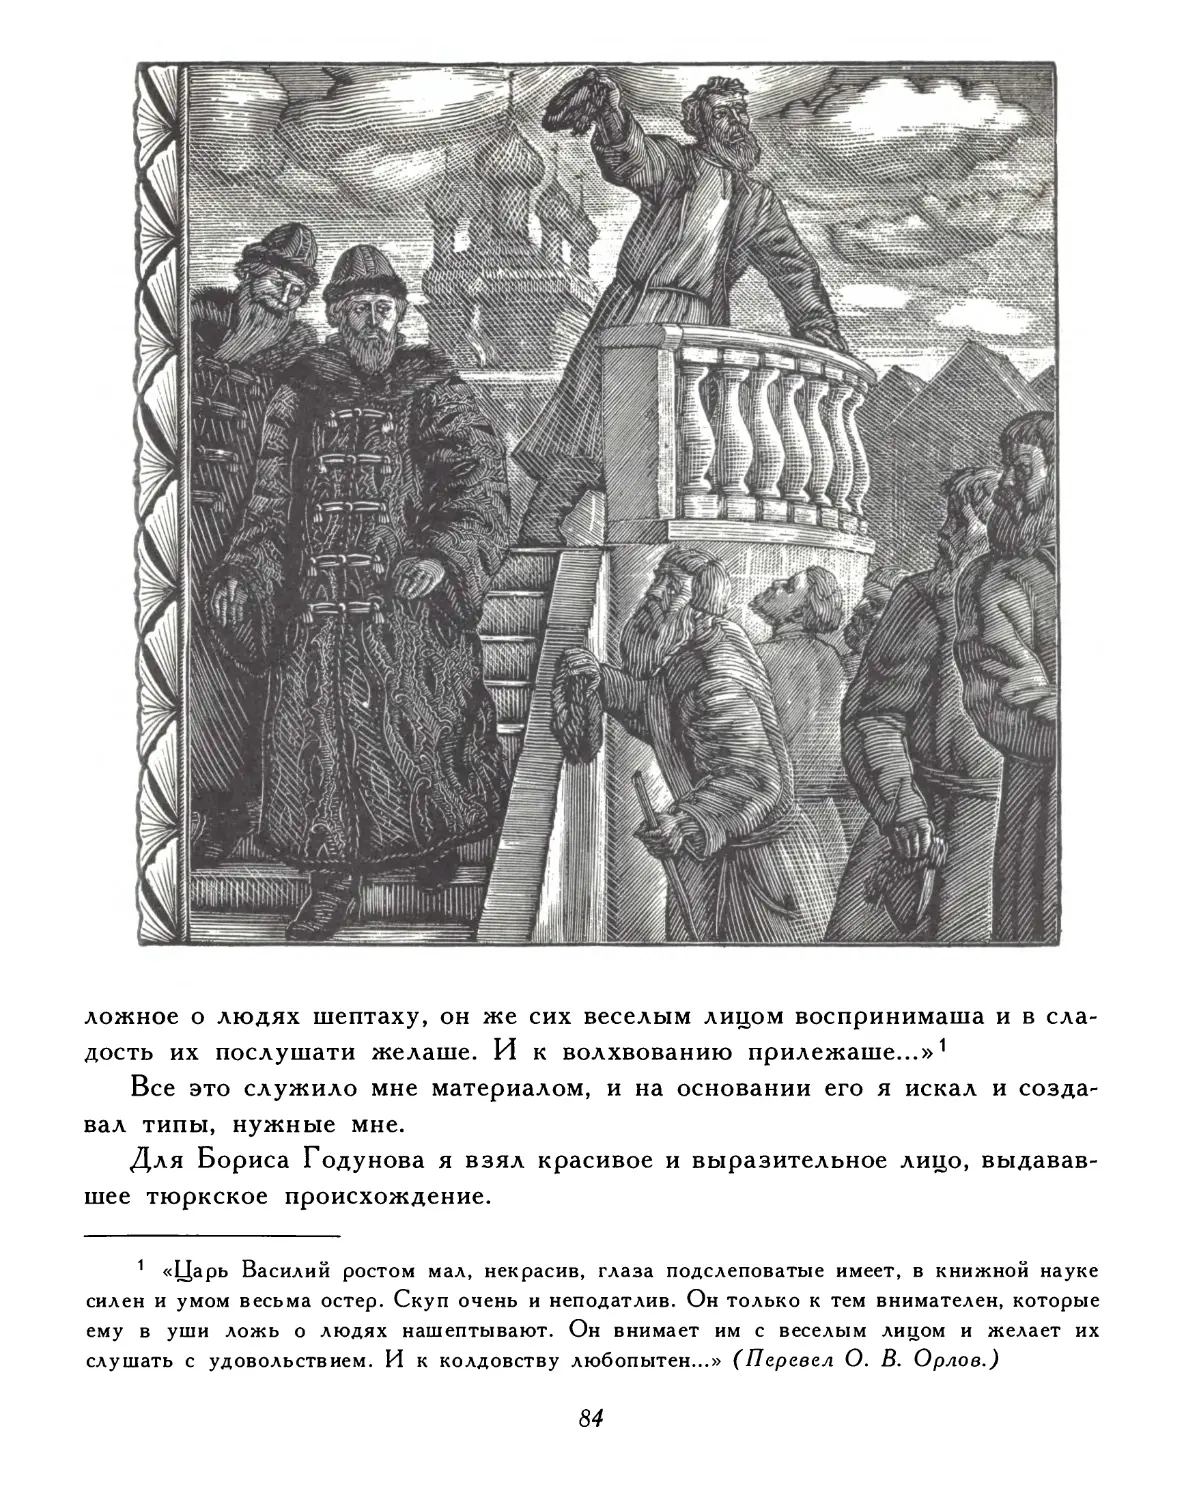 Борис Годунов Пушкина иллюстрации Фаворского